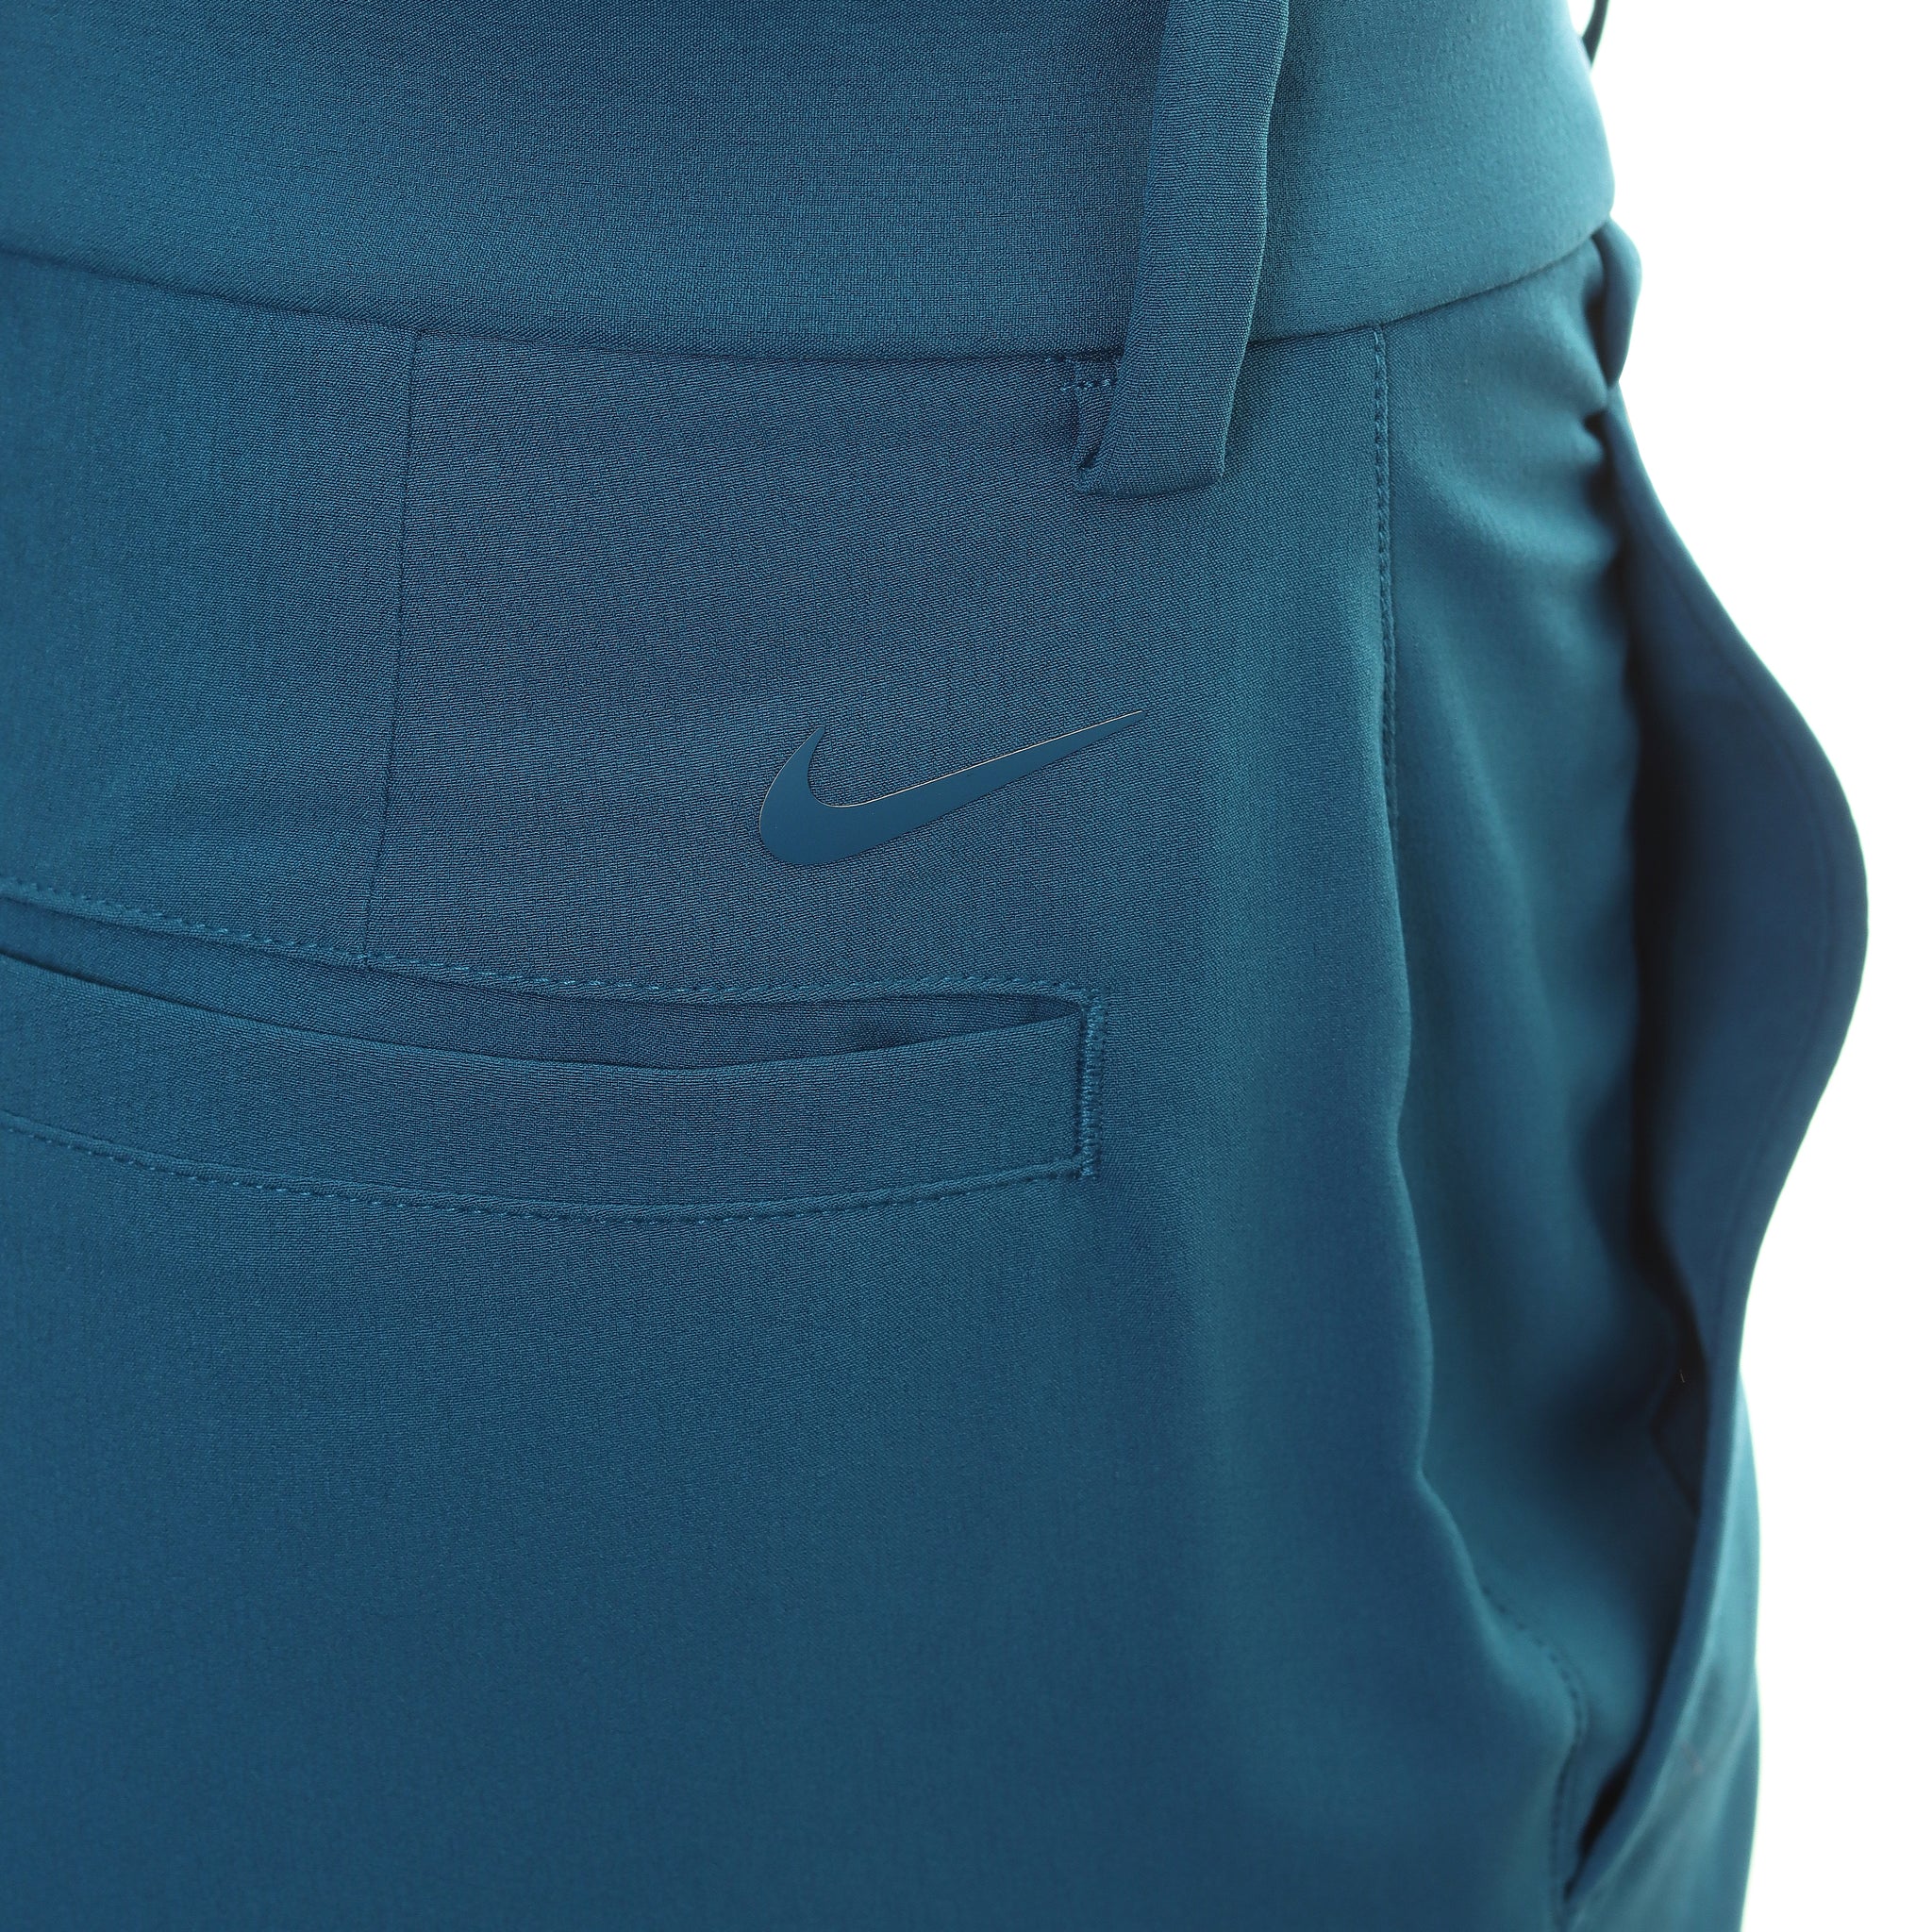 Nike Golf Hybrid Shorts